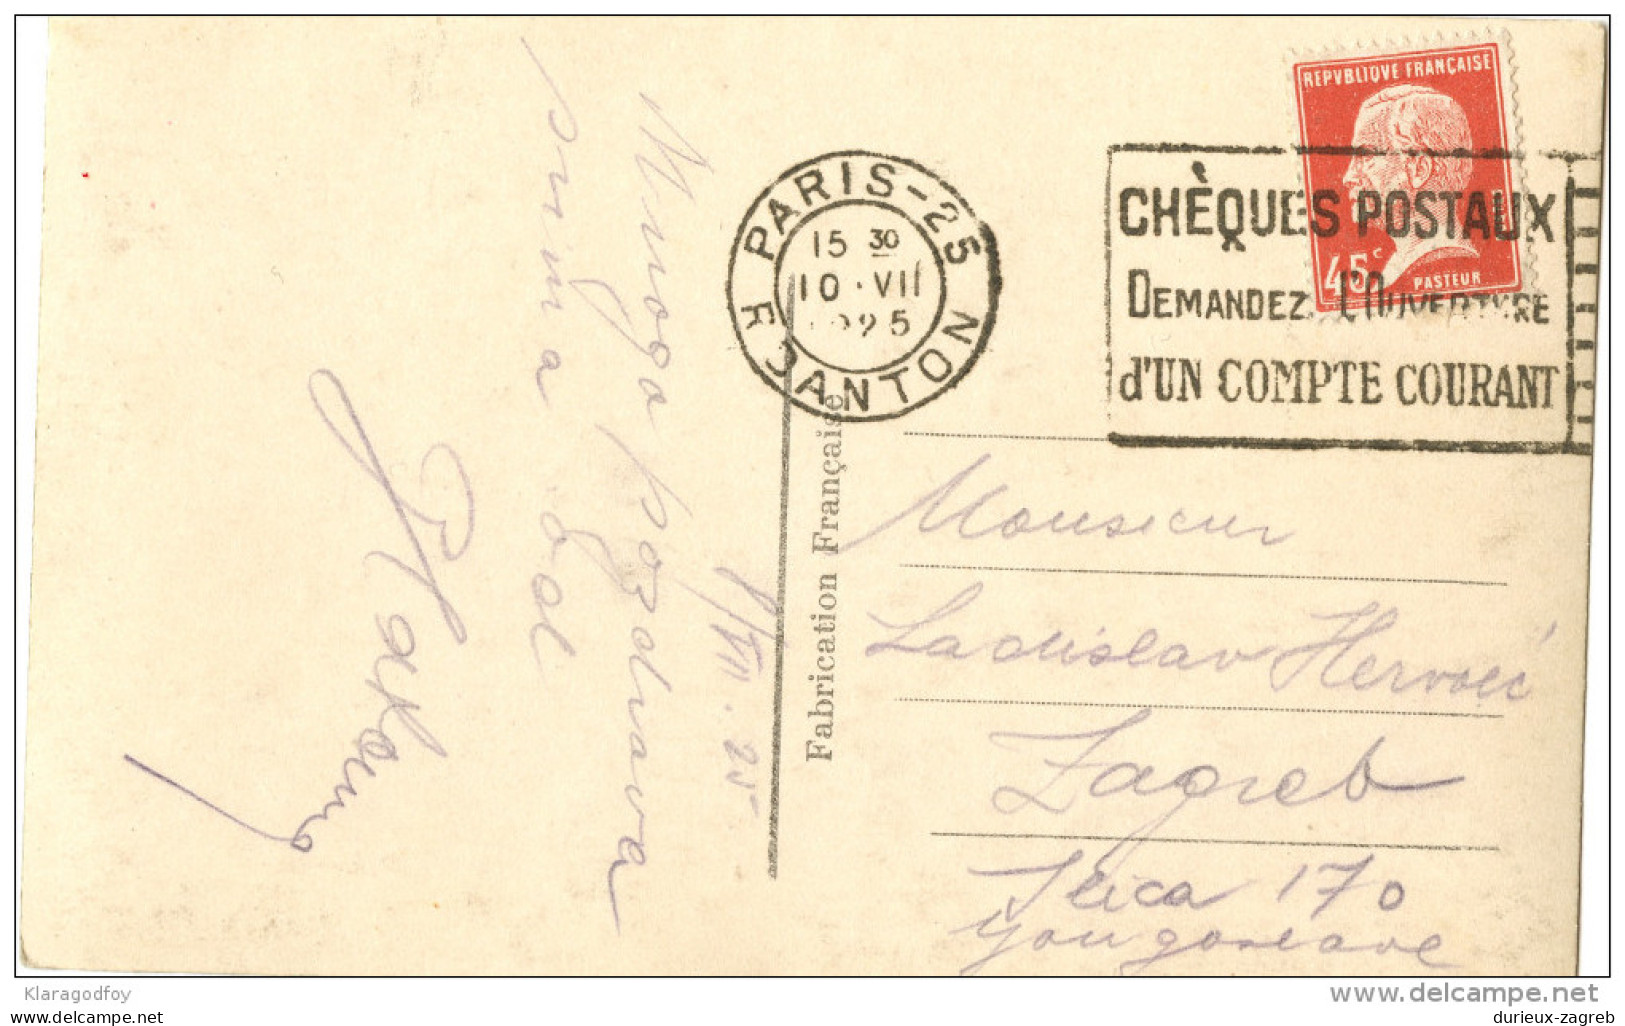 Paris - Notre-Dame Old Postcard Travelled 1925 Bb151013 - Notre Dame De Paris